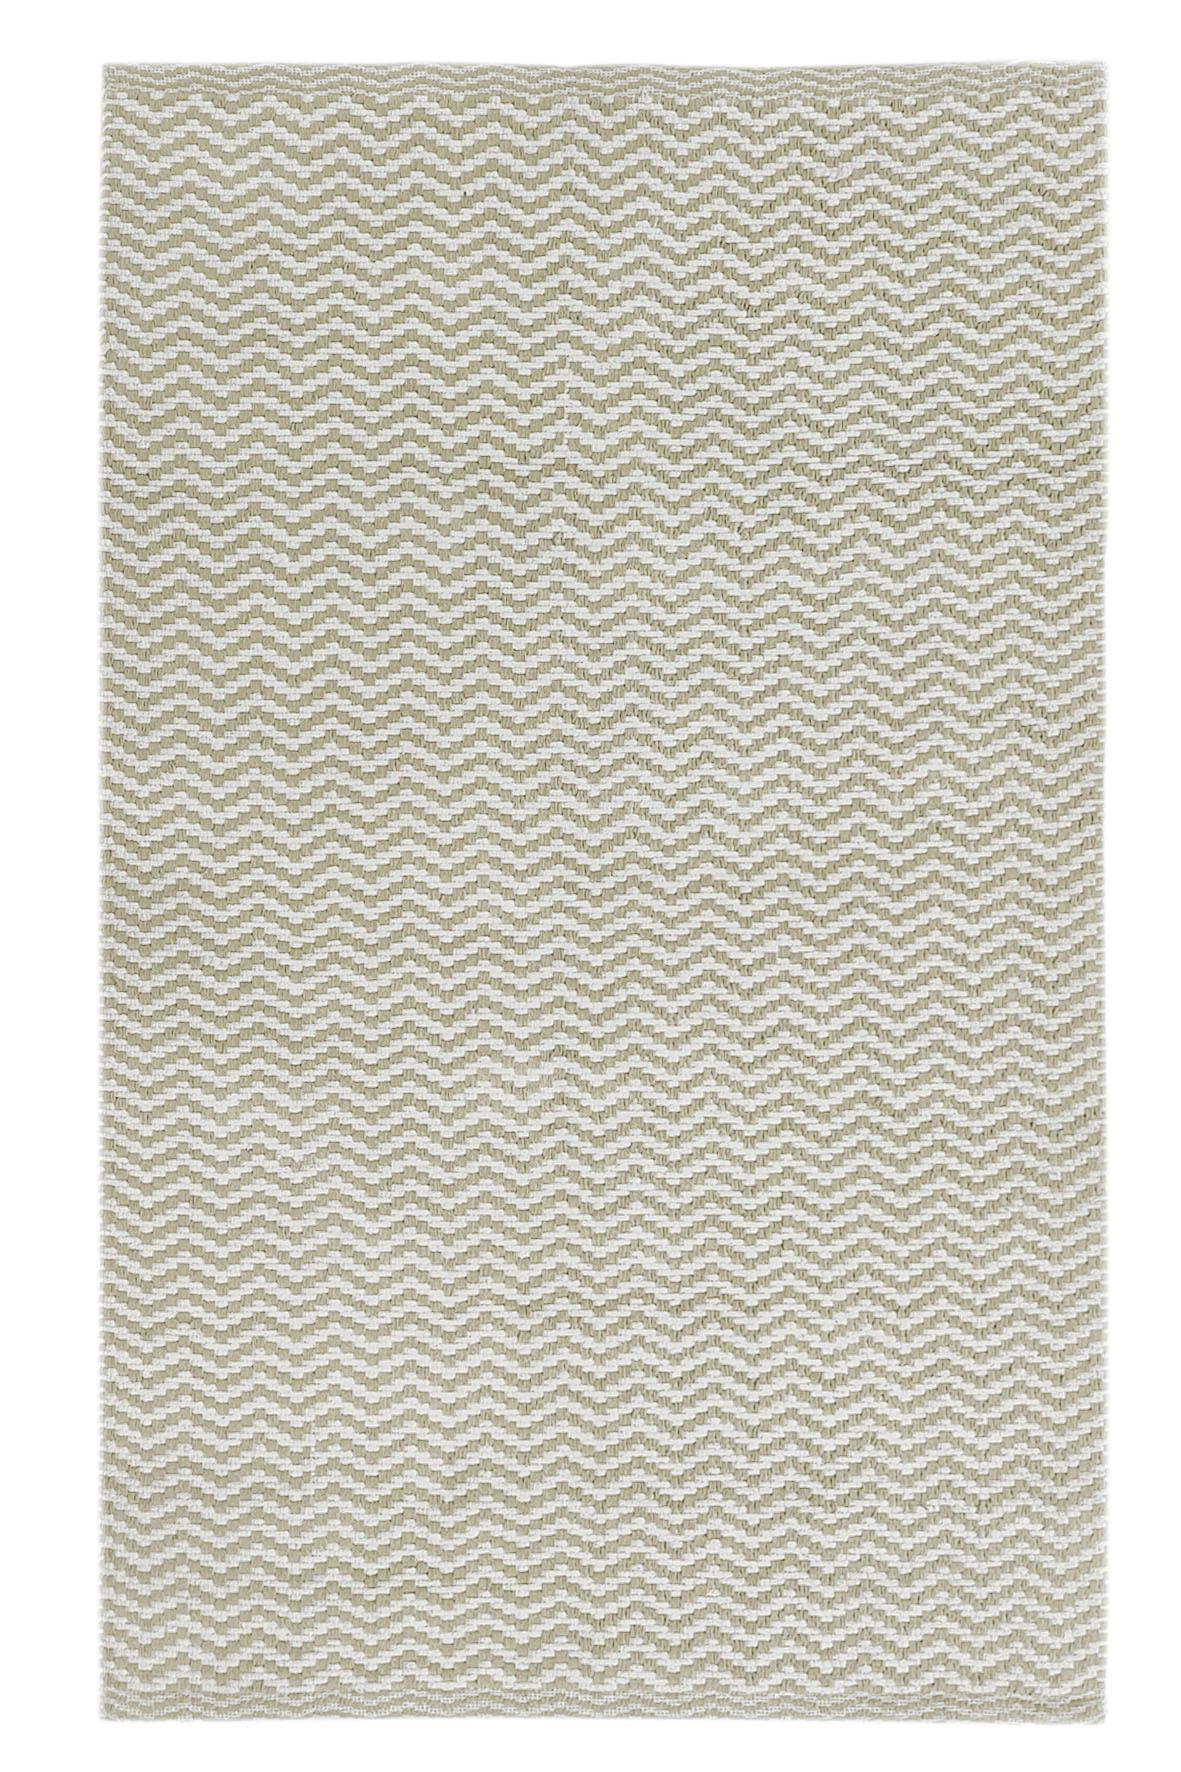 Teppich Vorleger Beige Elzana 70x120 cm - Beige, Textil (70/120cm) - James Wood